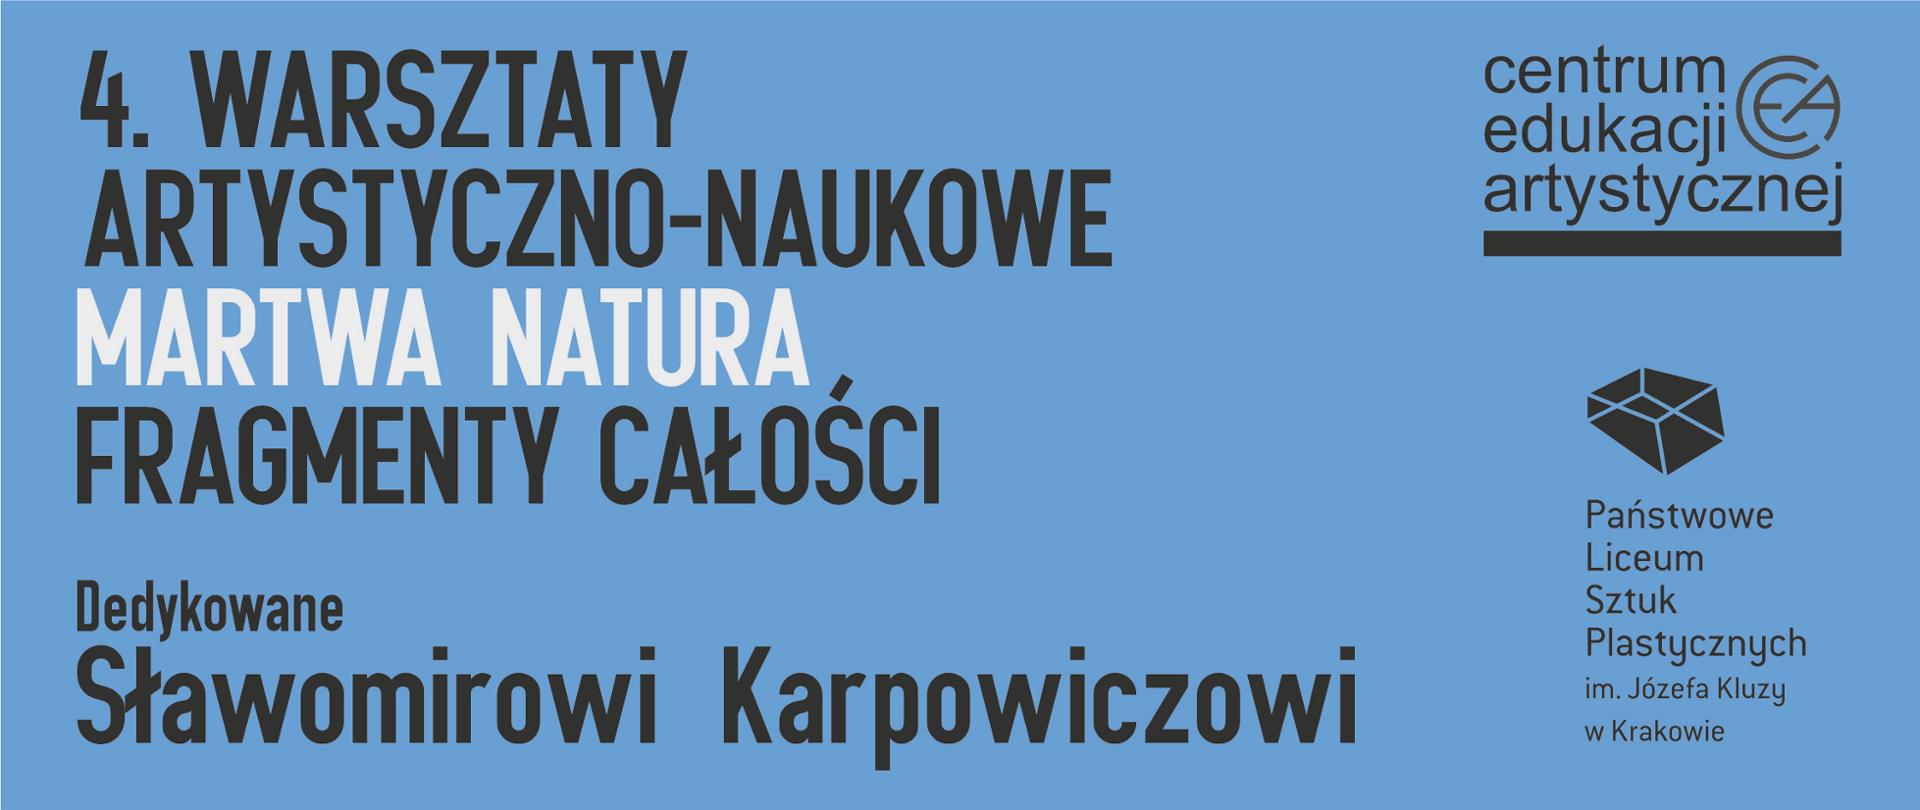 Na niebieskim tle napis:4. Warsztaty artystyczno-naukowe Martwa Natura Fragmenty całości Dedykowane Sławomirowi Karpowiczowi. Z prawej strony znajduje się logotyp CEA oraz PLSP